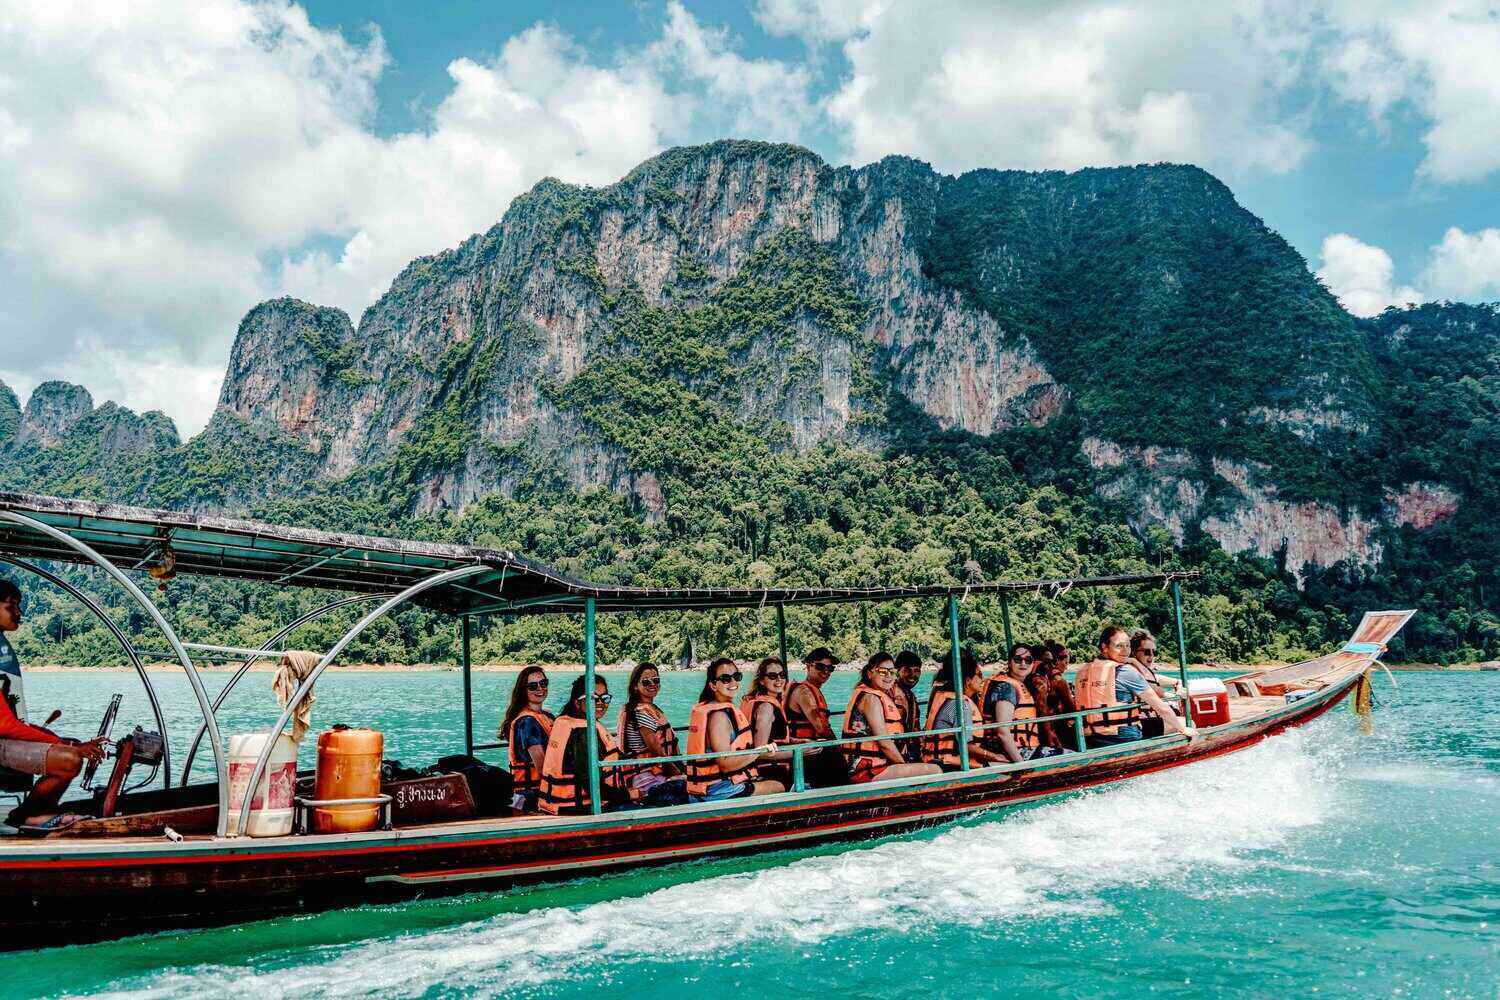 khao sok boat tour price